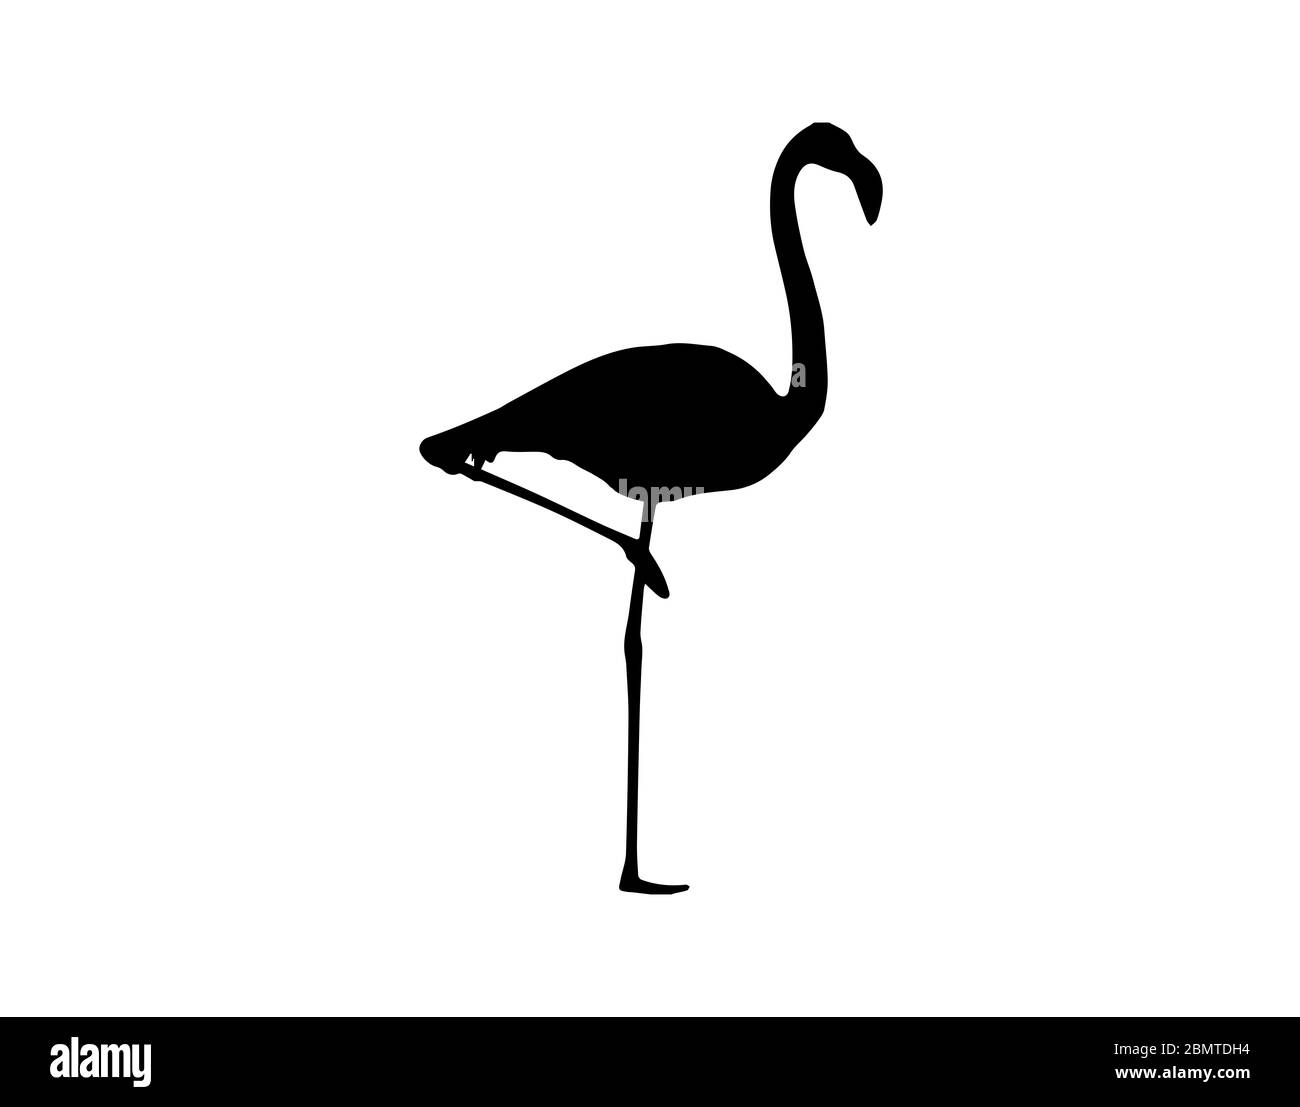 Silhouette of flamingo on white background Stock Photo